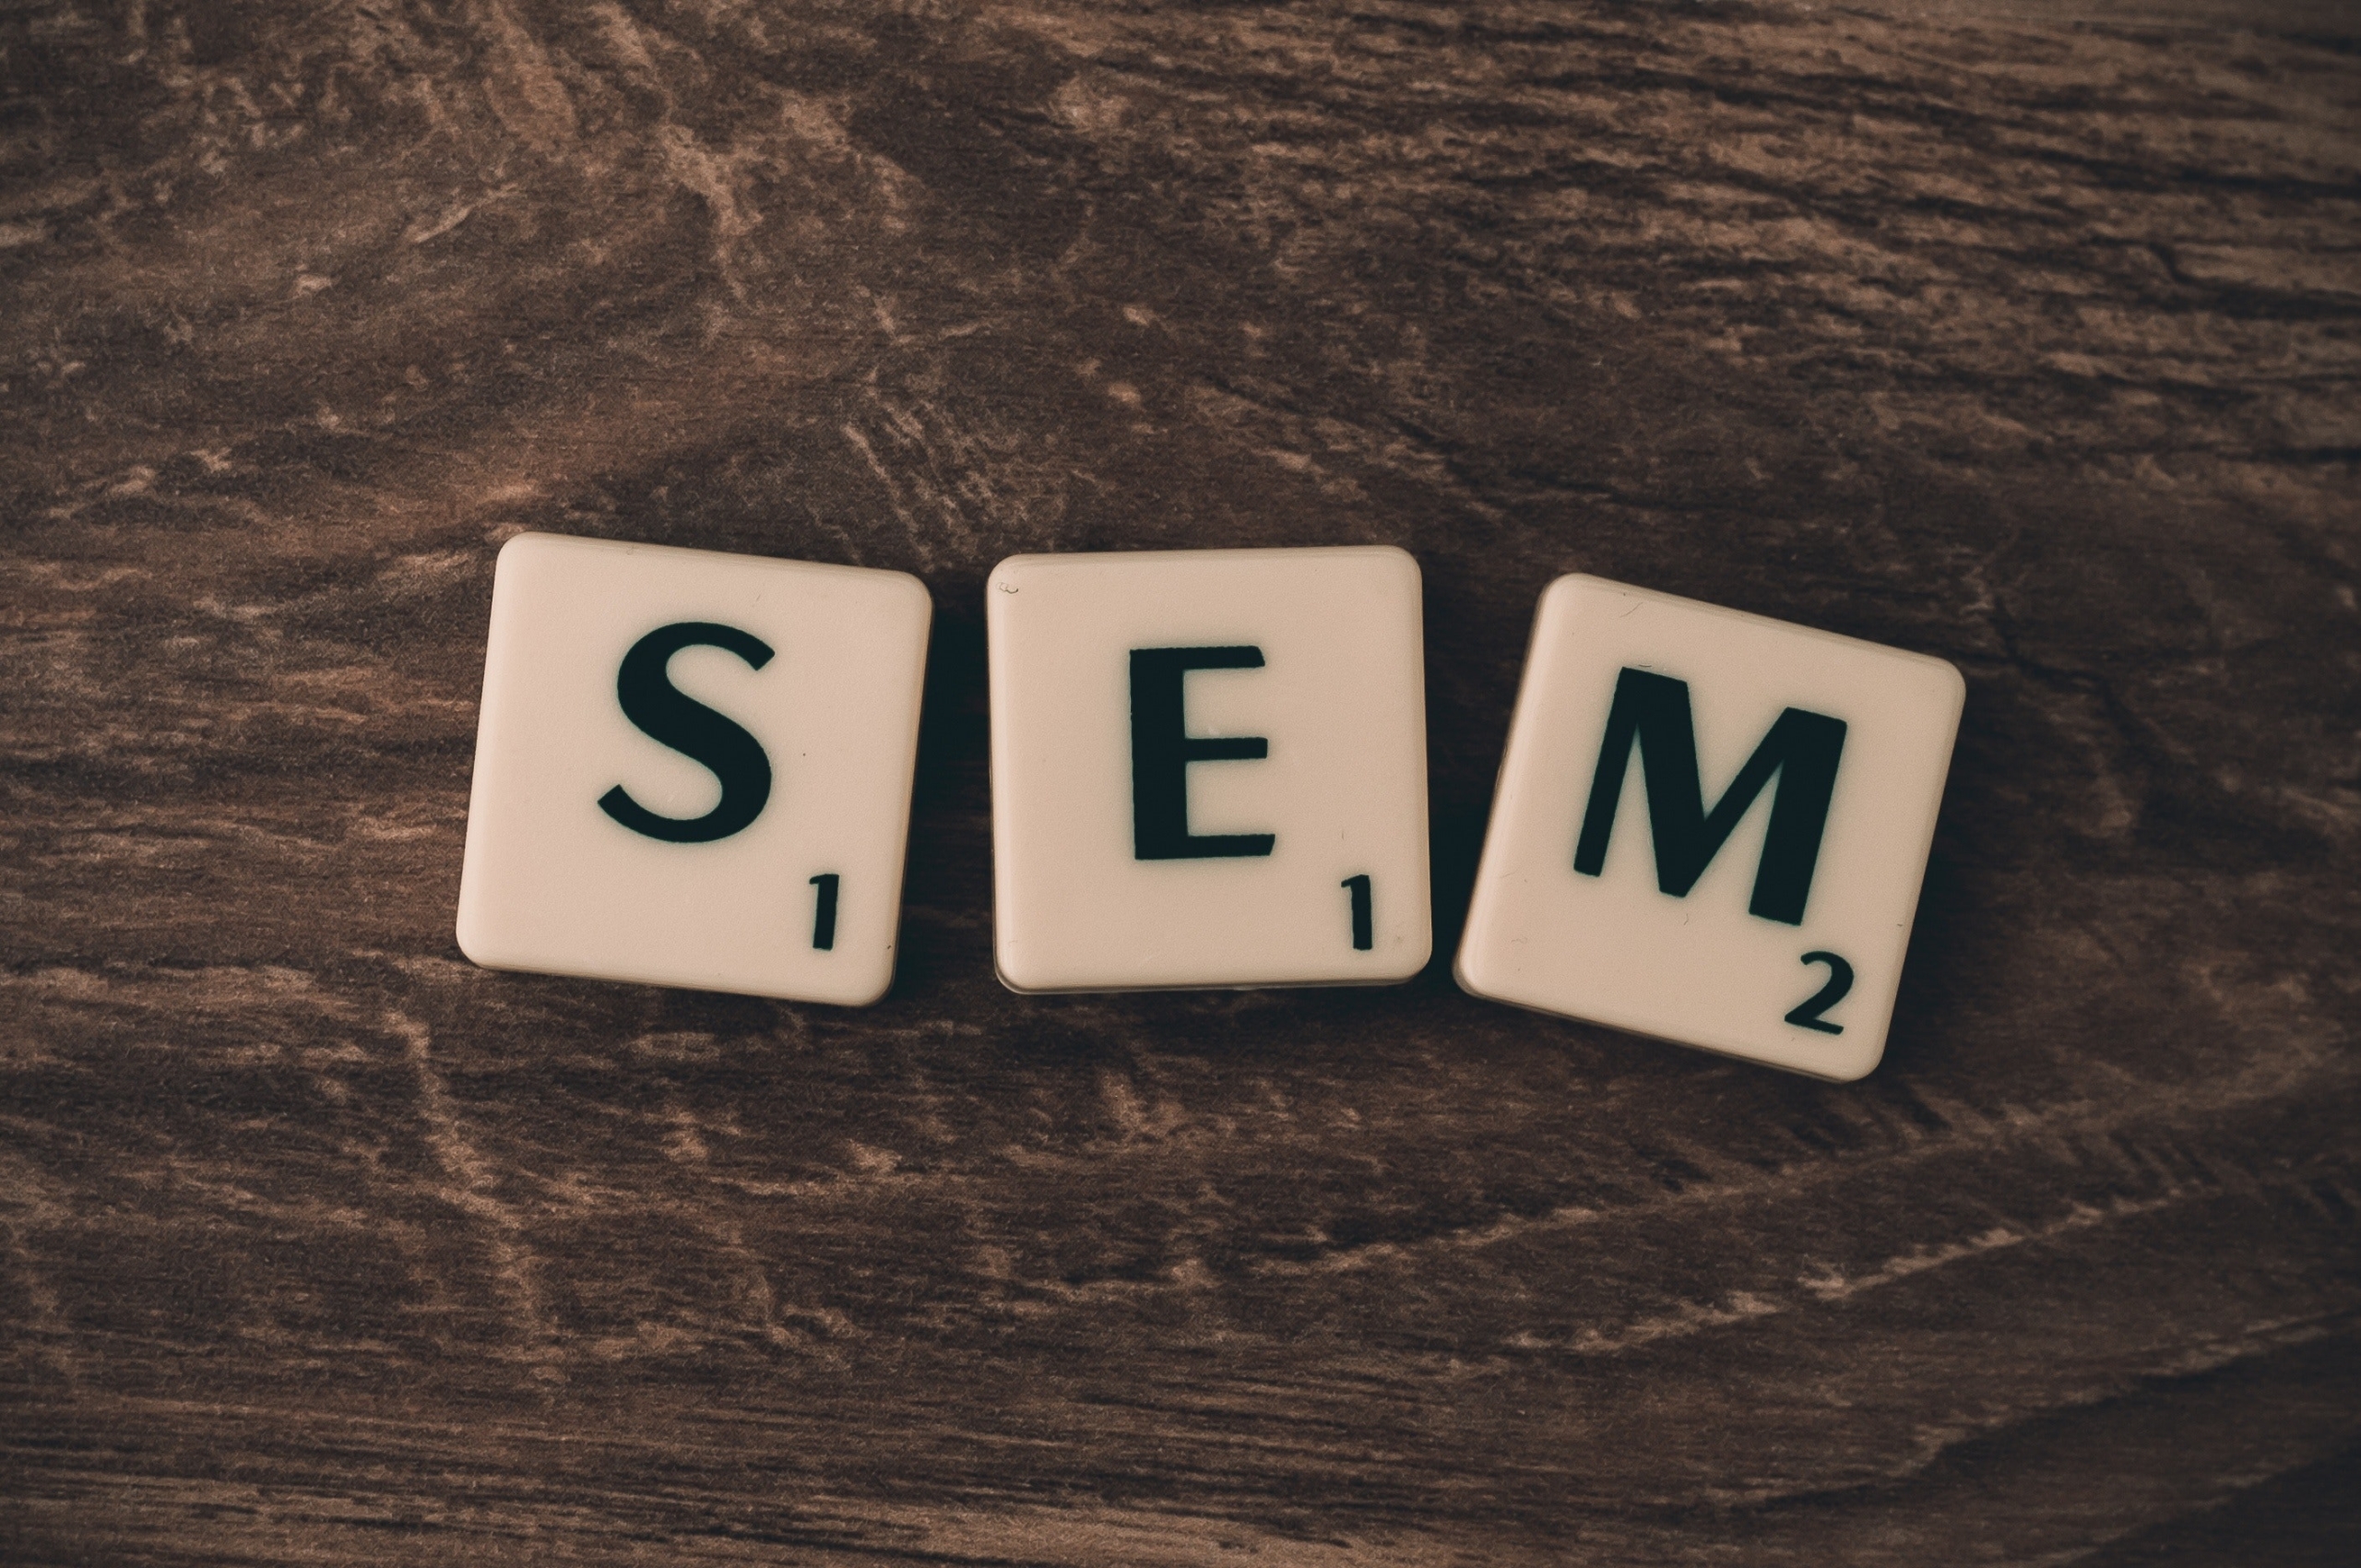 SEM as a Marketing Channel